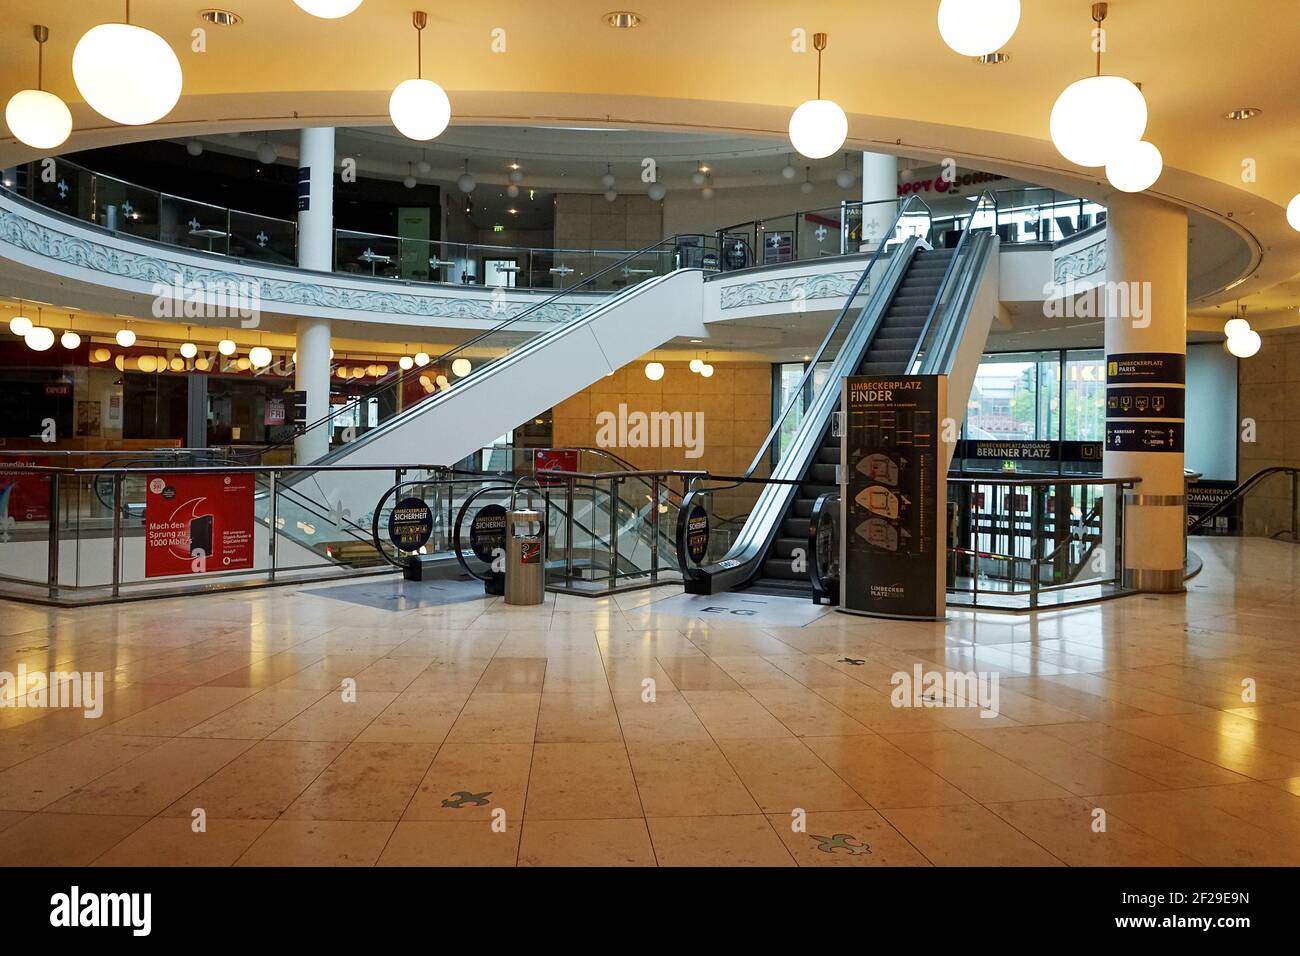 El centro de la ciudad, centro comercial en Essen Stadtmitte está vacío sin clientes, NRW, Alemania, Europa, 2020 de abril, la falsa alarma de virus daña la economía. Foto de stock